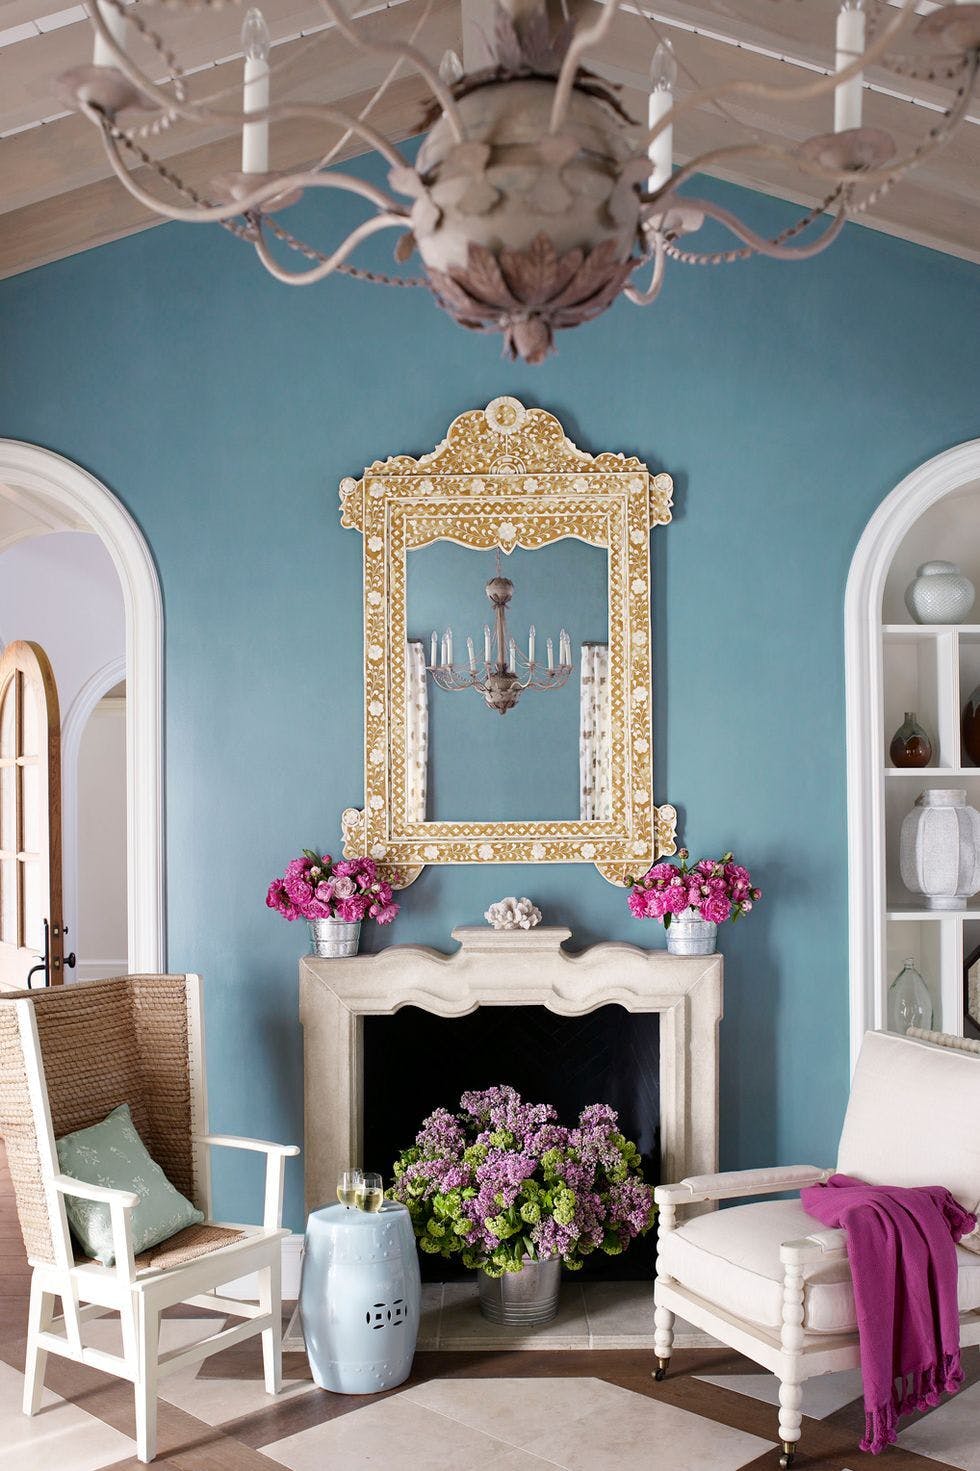 Una chimenea con flores en su interior aporta calidez al hogar.